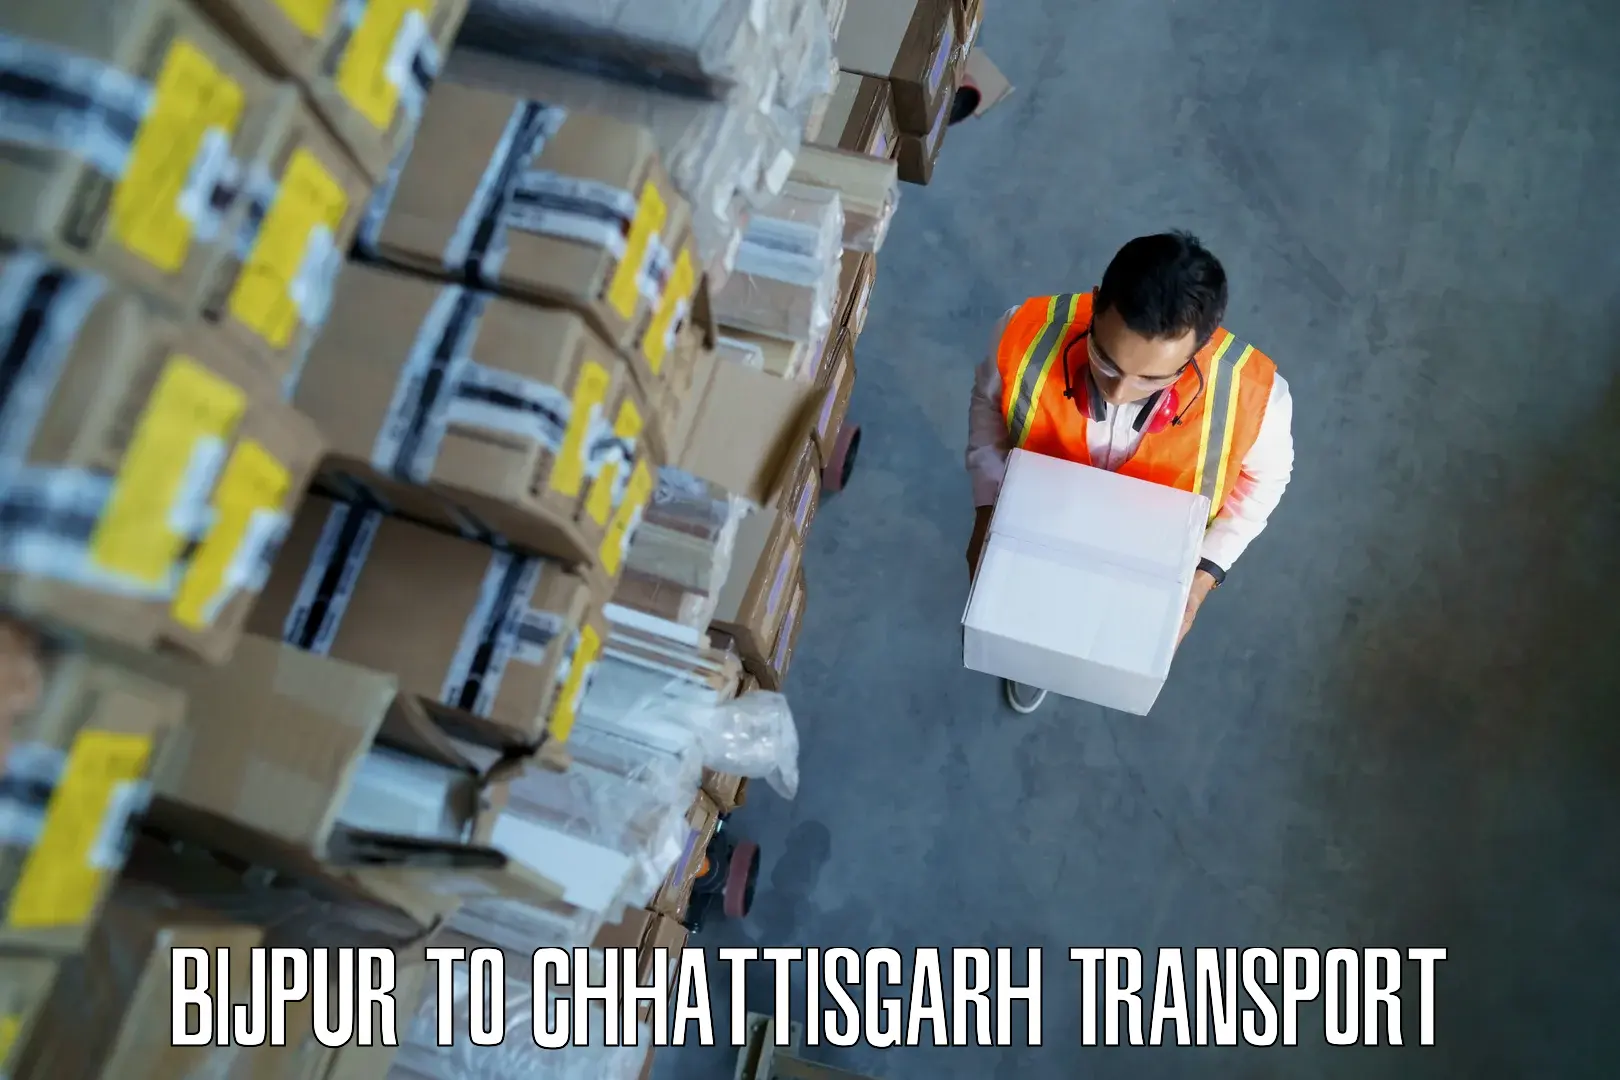 Express transport services Bijpur to Chhattisgarh